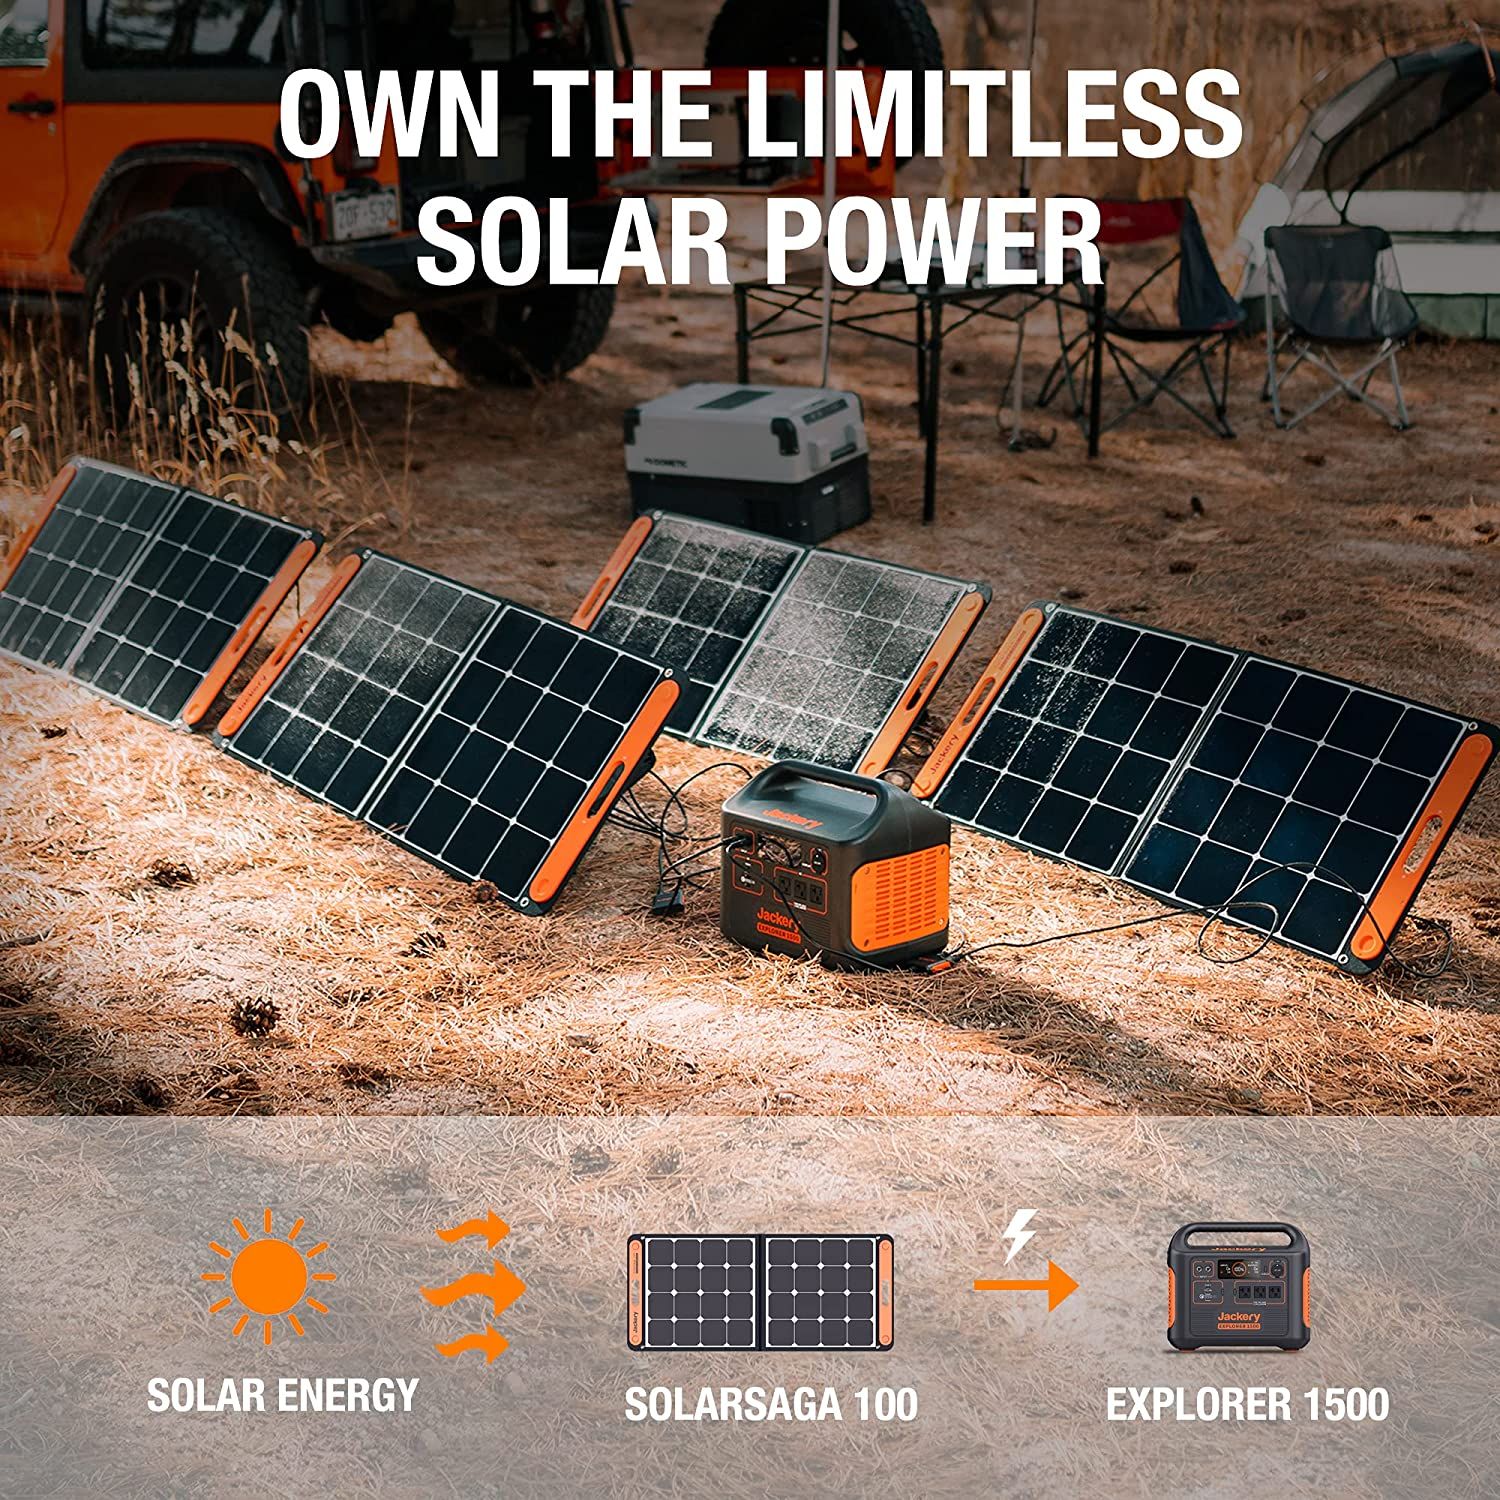 Jackery Solar Generator 1500 showing solar panel charging